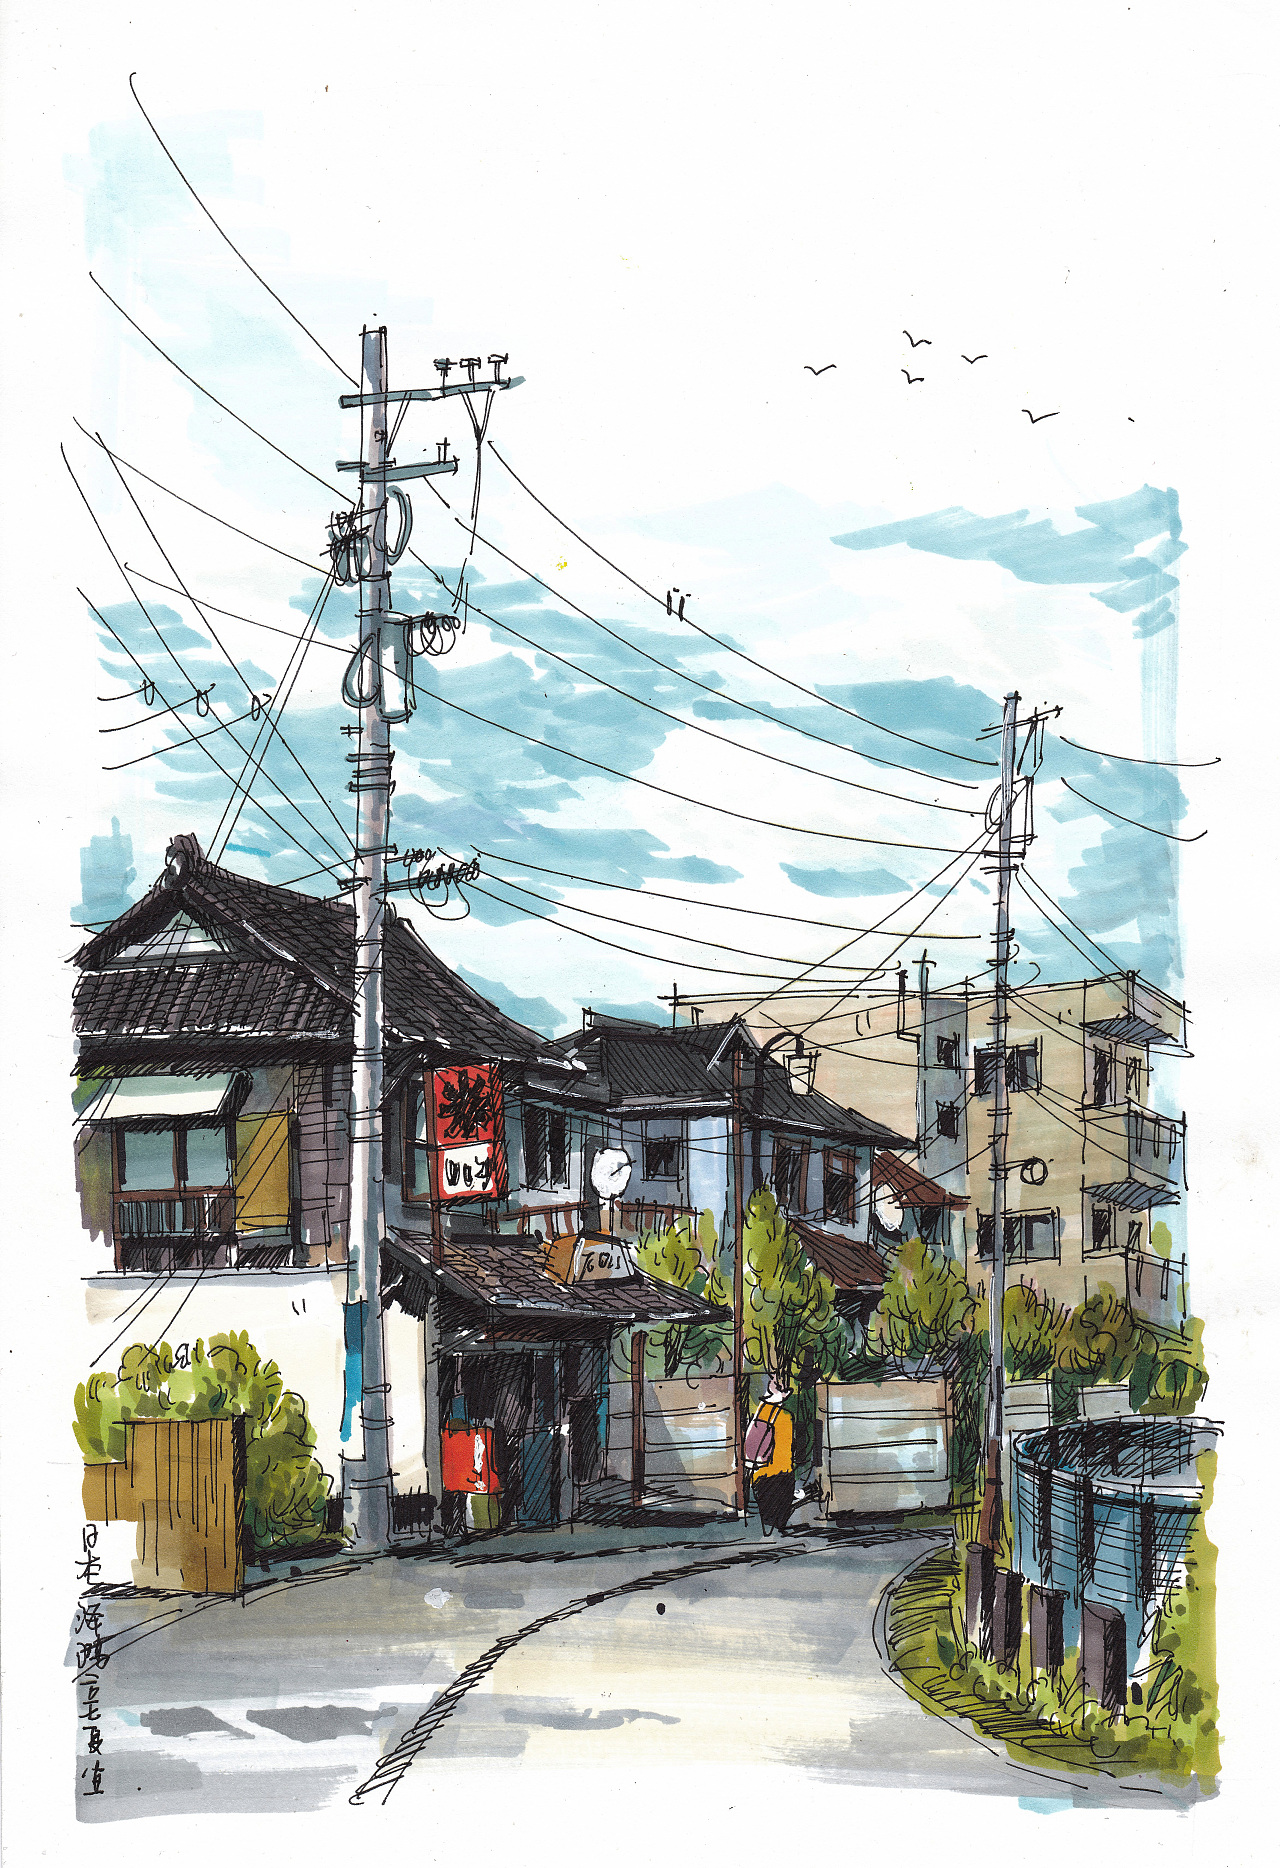 马克笔风景手绘日本街景